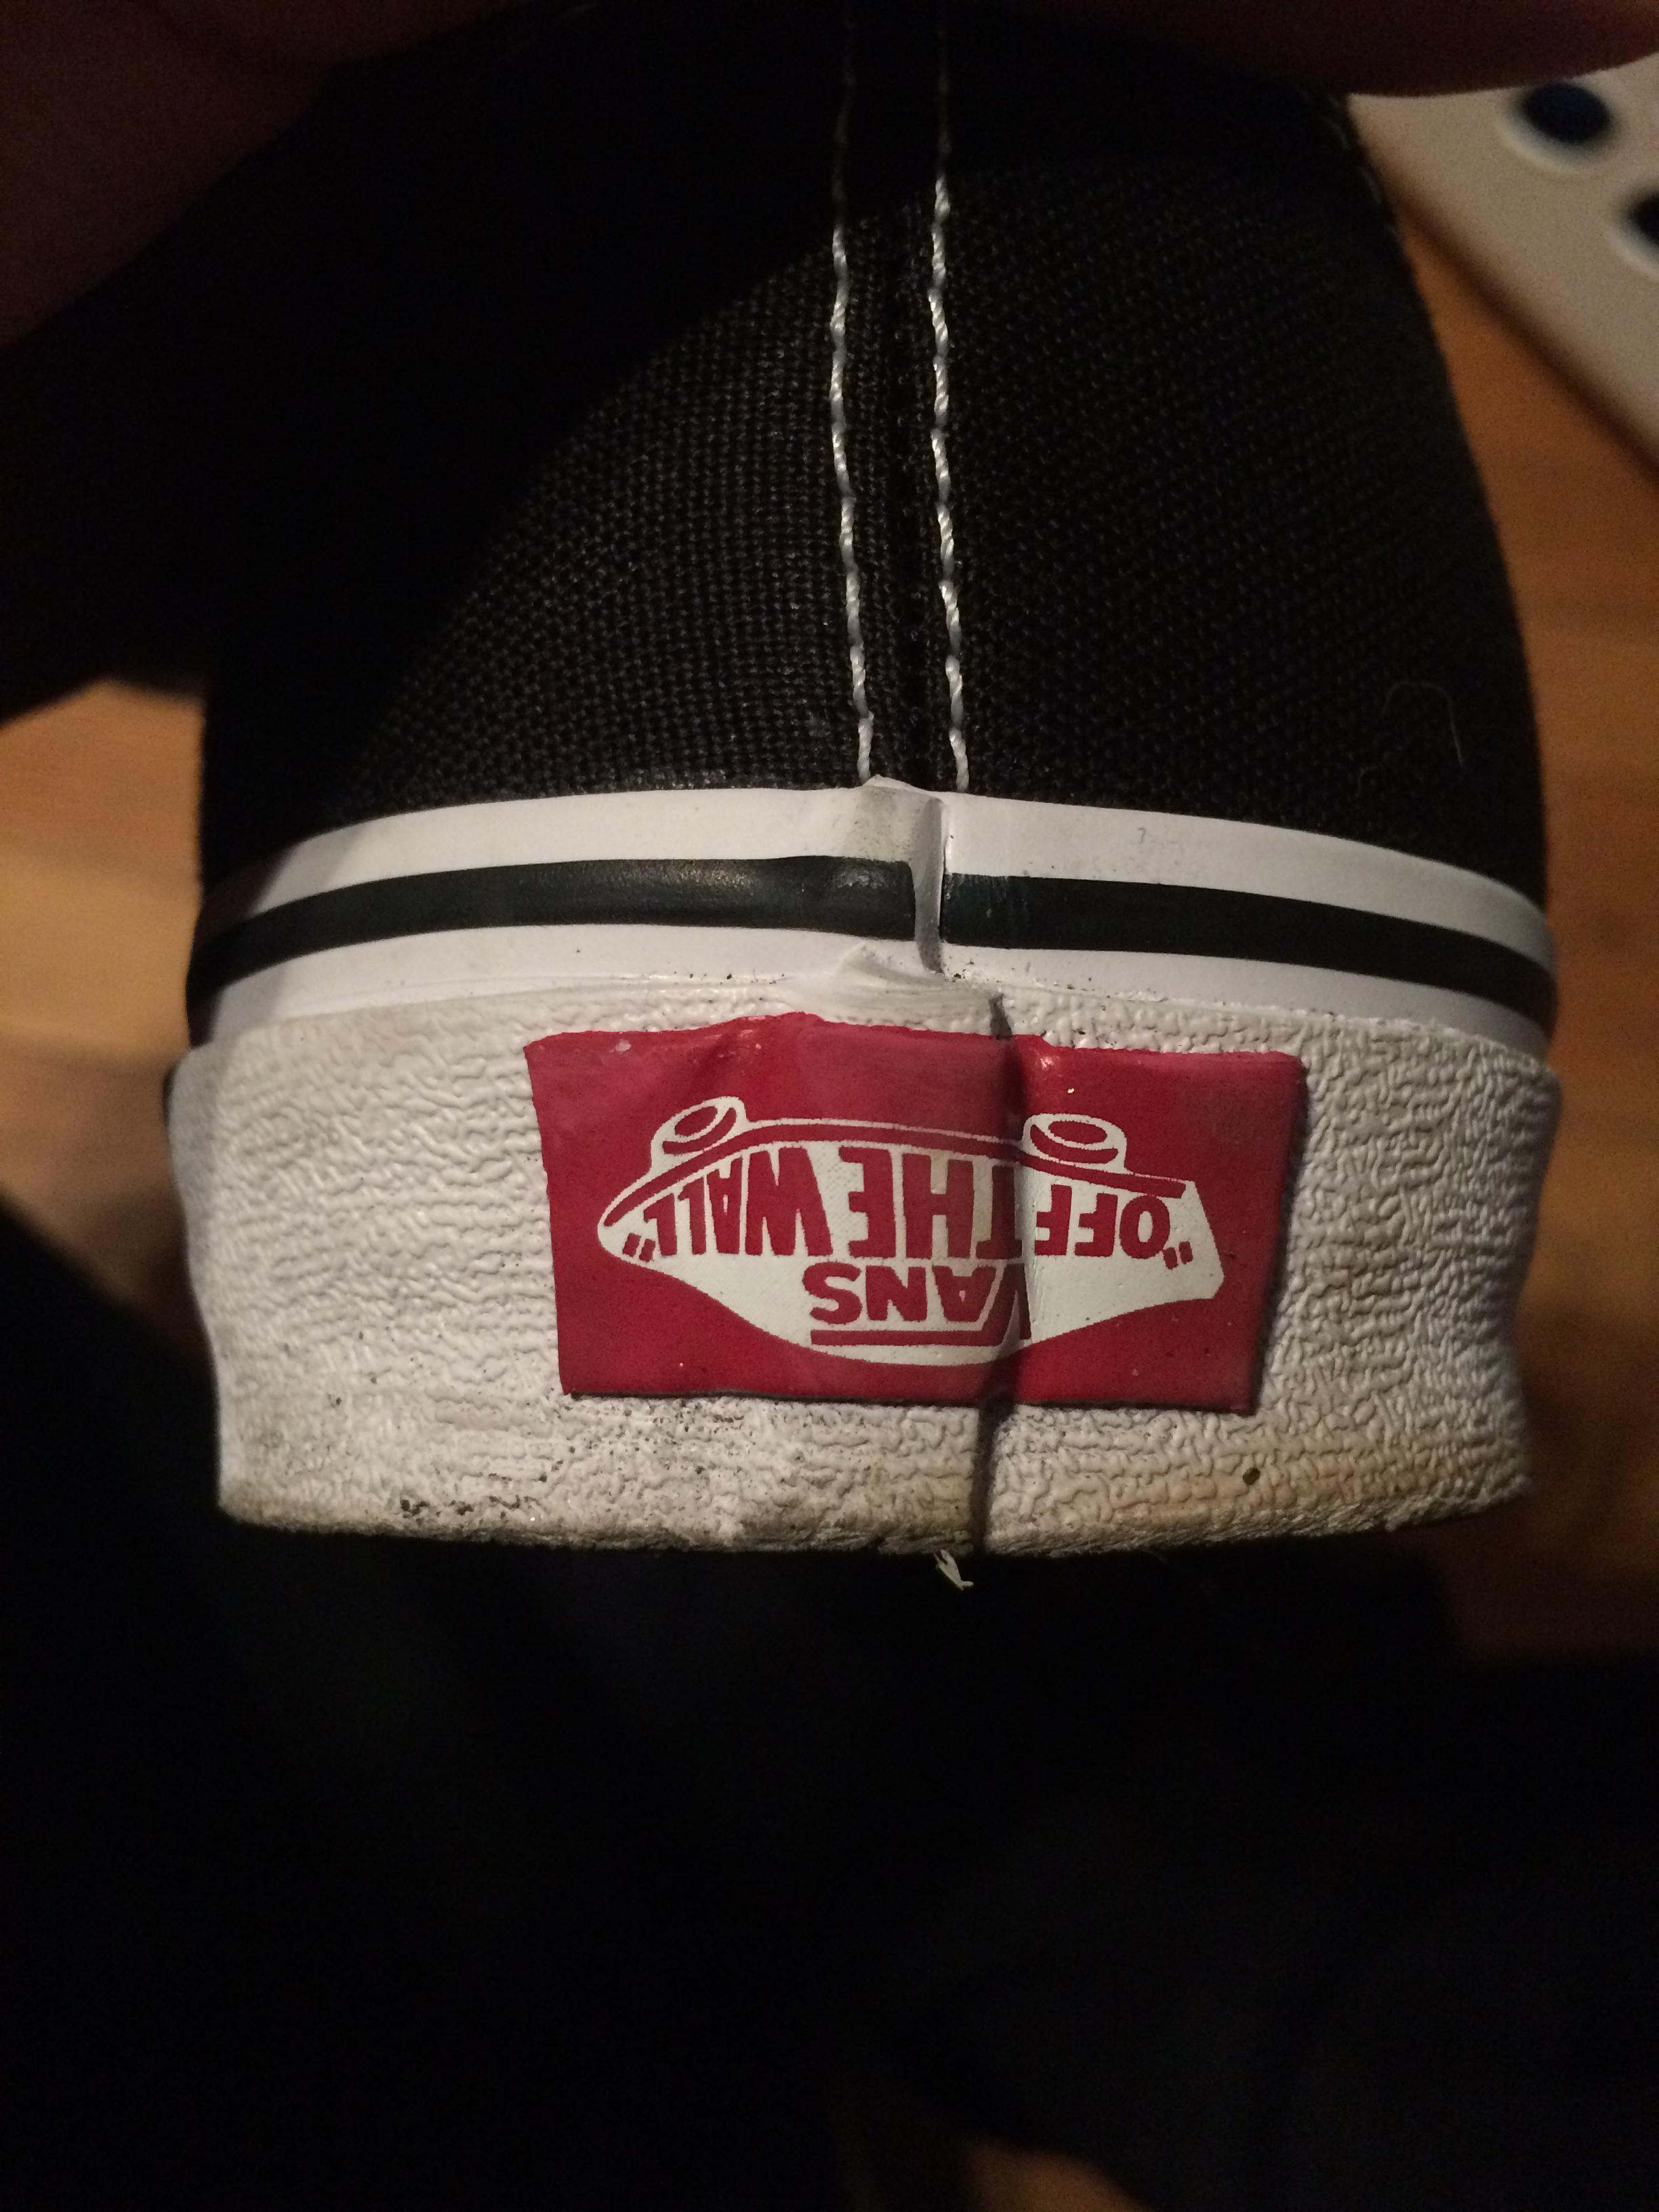 Fake Vans Logo - The Vans logo on my shoe is upside down